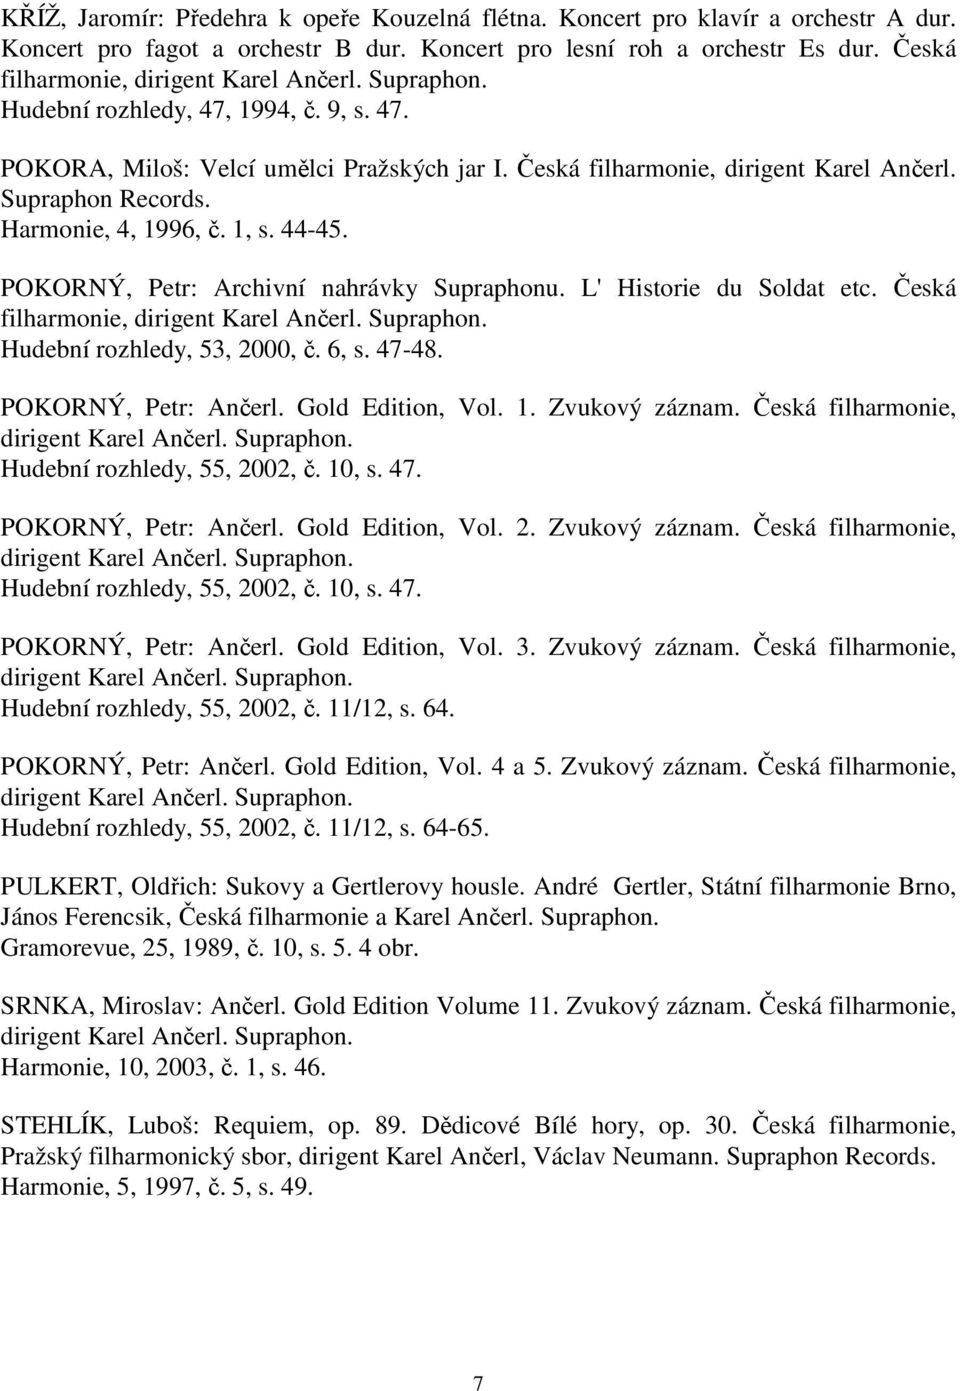 Harmonie, 4, 1996, č. 1, s. 44-45. POKORNÝ, Petr: Archivní nahrávky Supraphonu. L' Historie du Soldat etc. Česká filharmonie, dirigent Karel Hudební rozhledy, 53, 2000, č. 6, s. 47-48.